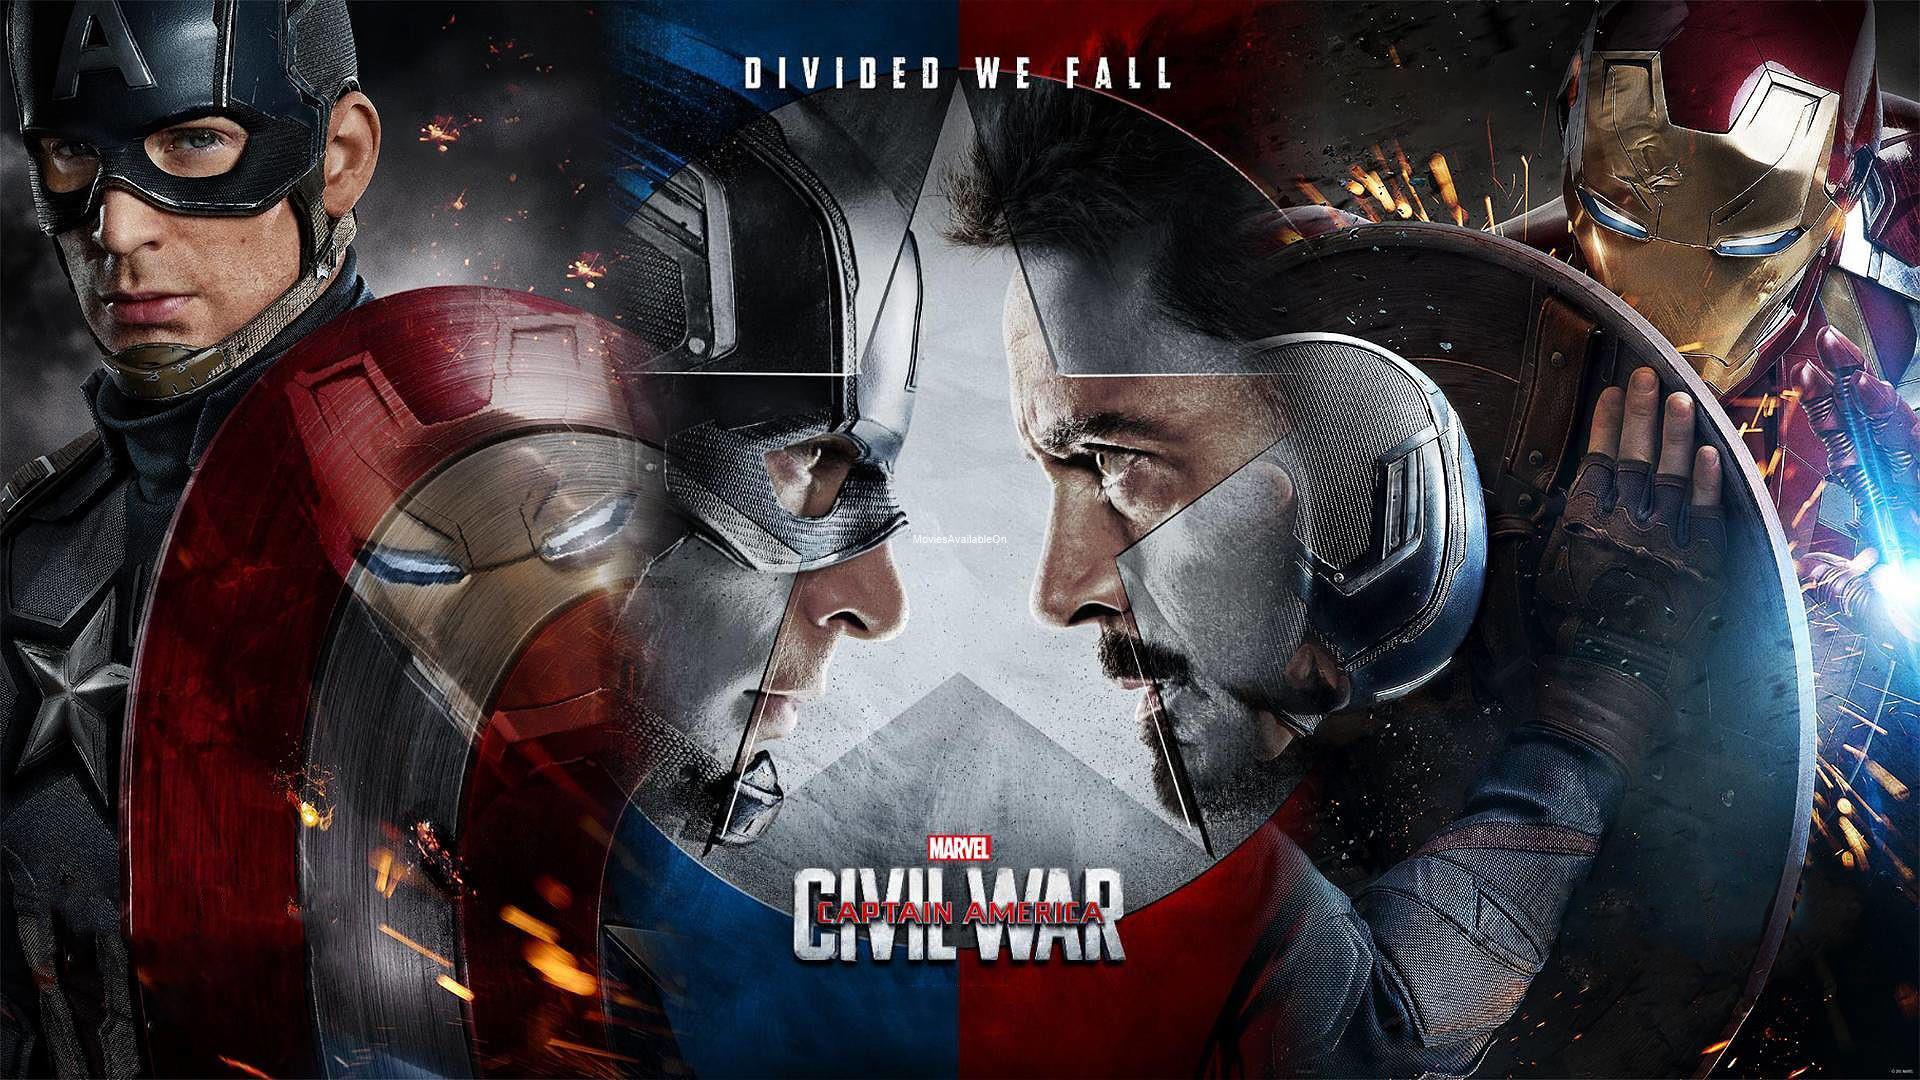 Watch Captain America: Civil War movie online